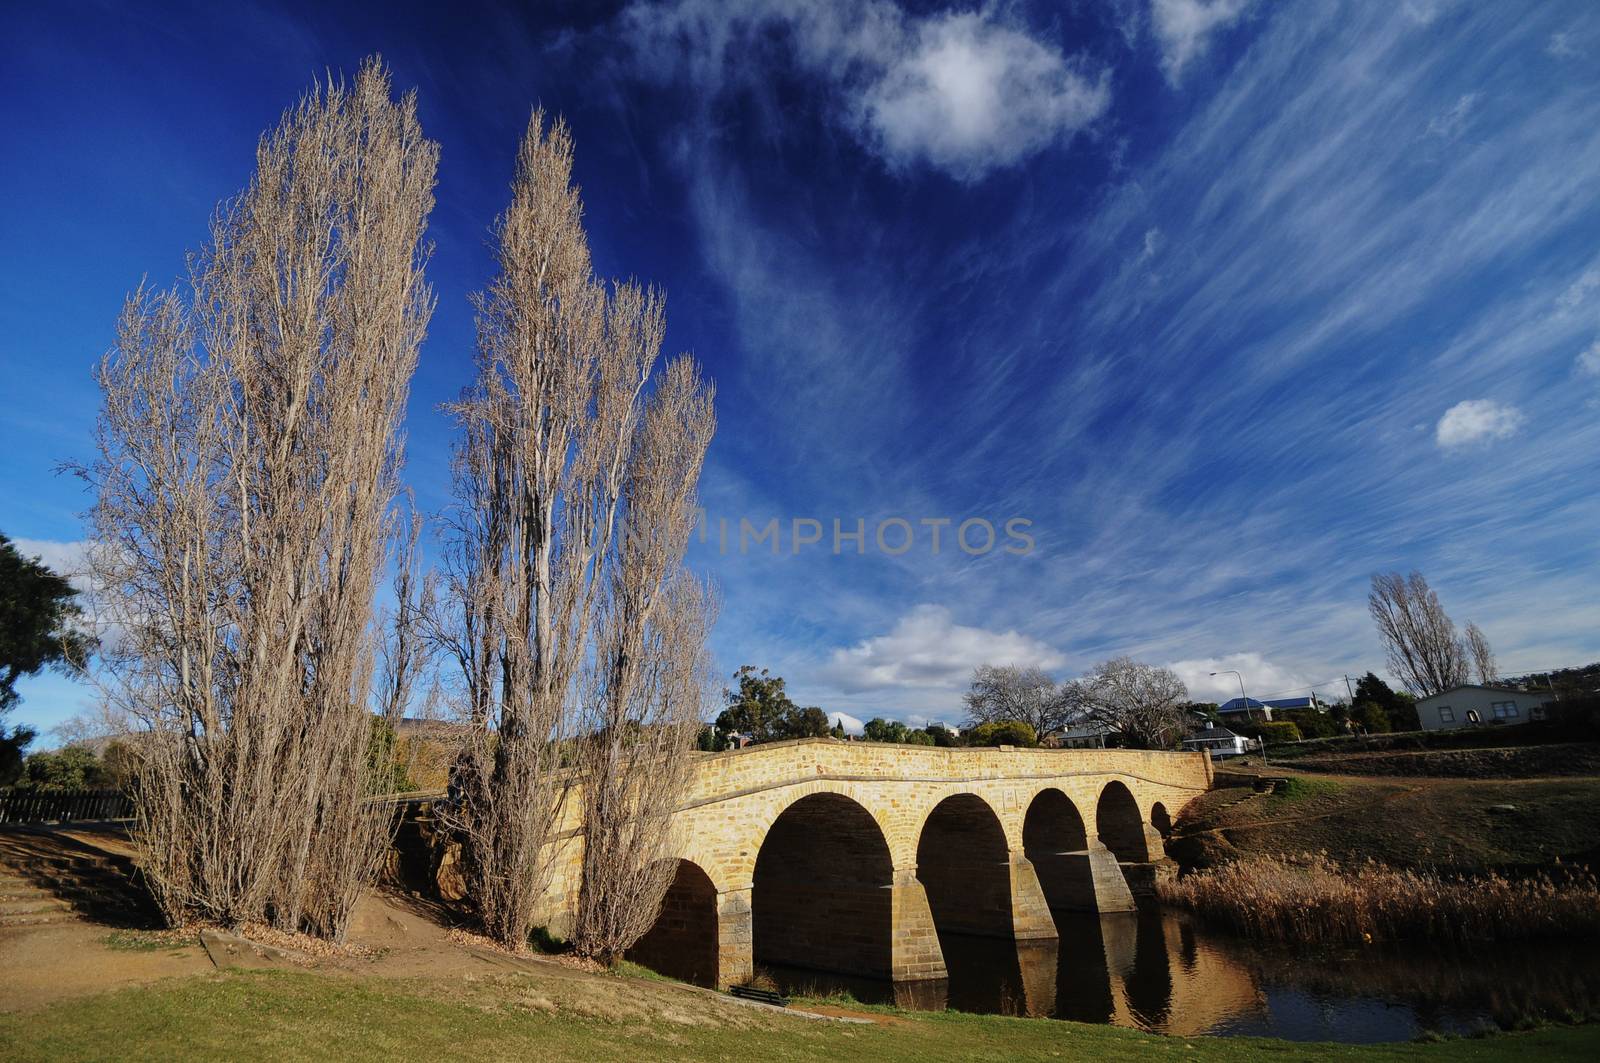 Winter riverside near Richmond bridge in Tasmania Australia by eyeofpaul